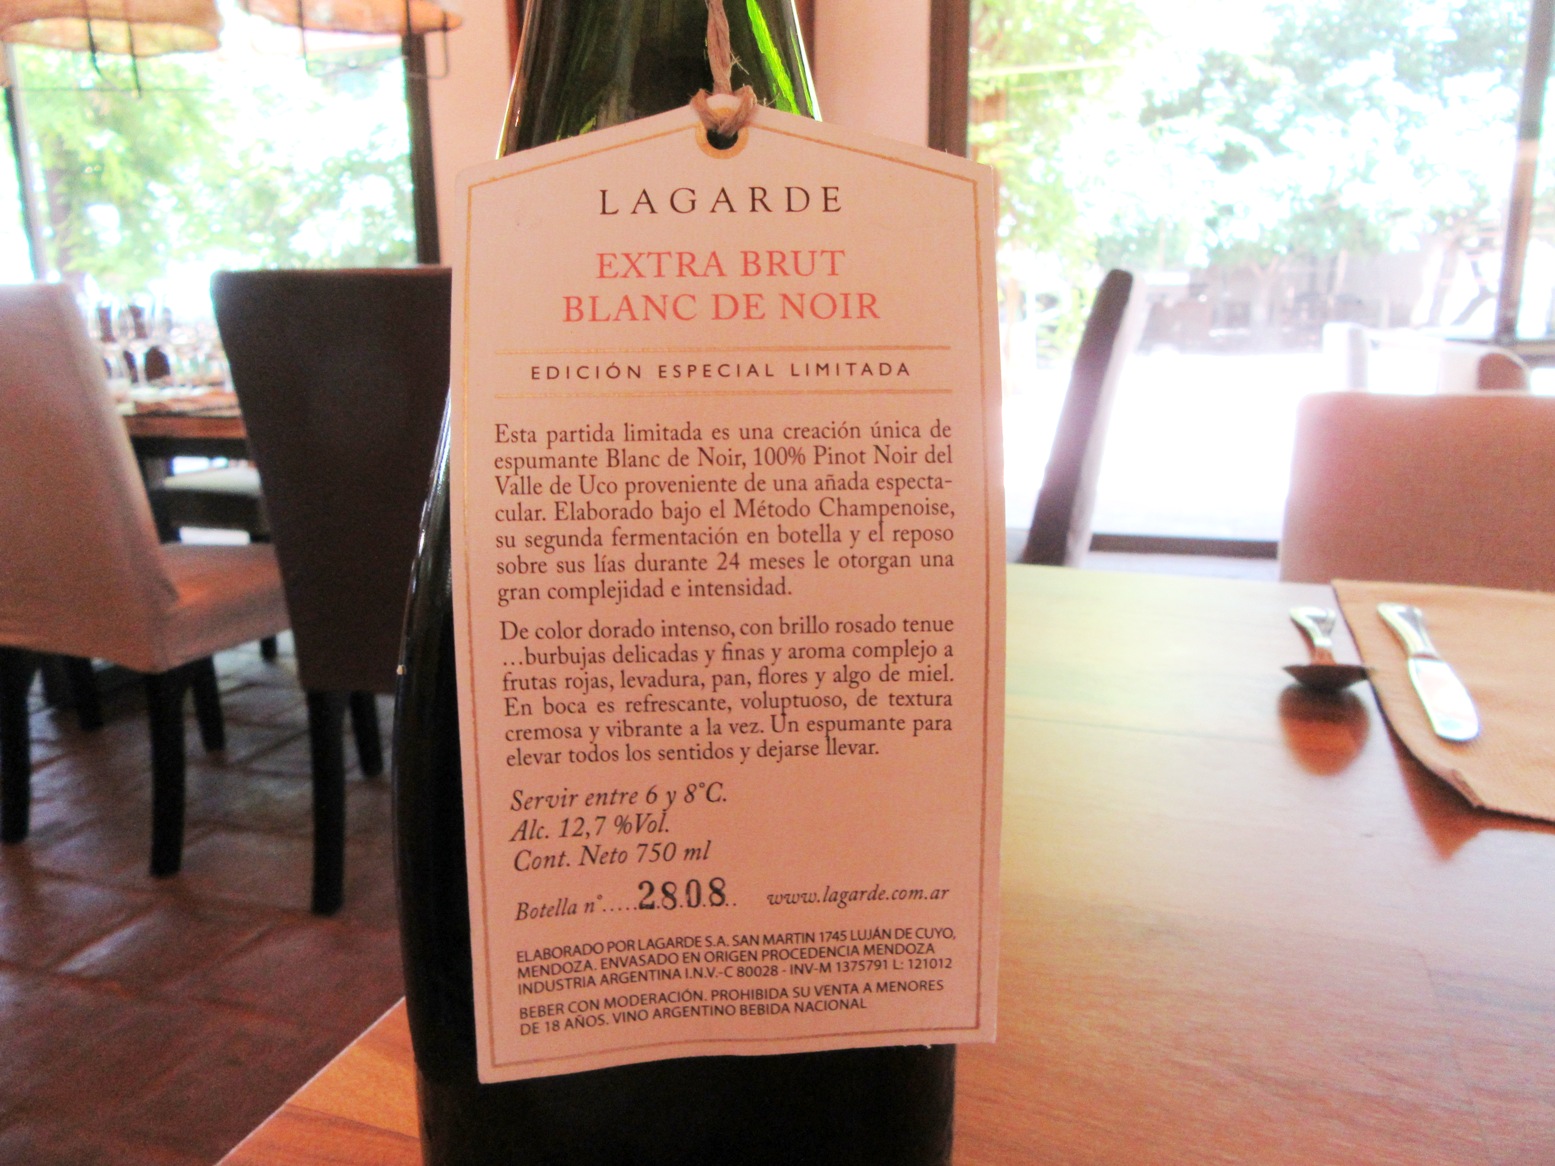 Lagarde Extra Brut Blanc de Noir NV, Uco Valley, Mendoza, Argentina, Wine Casual